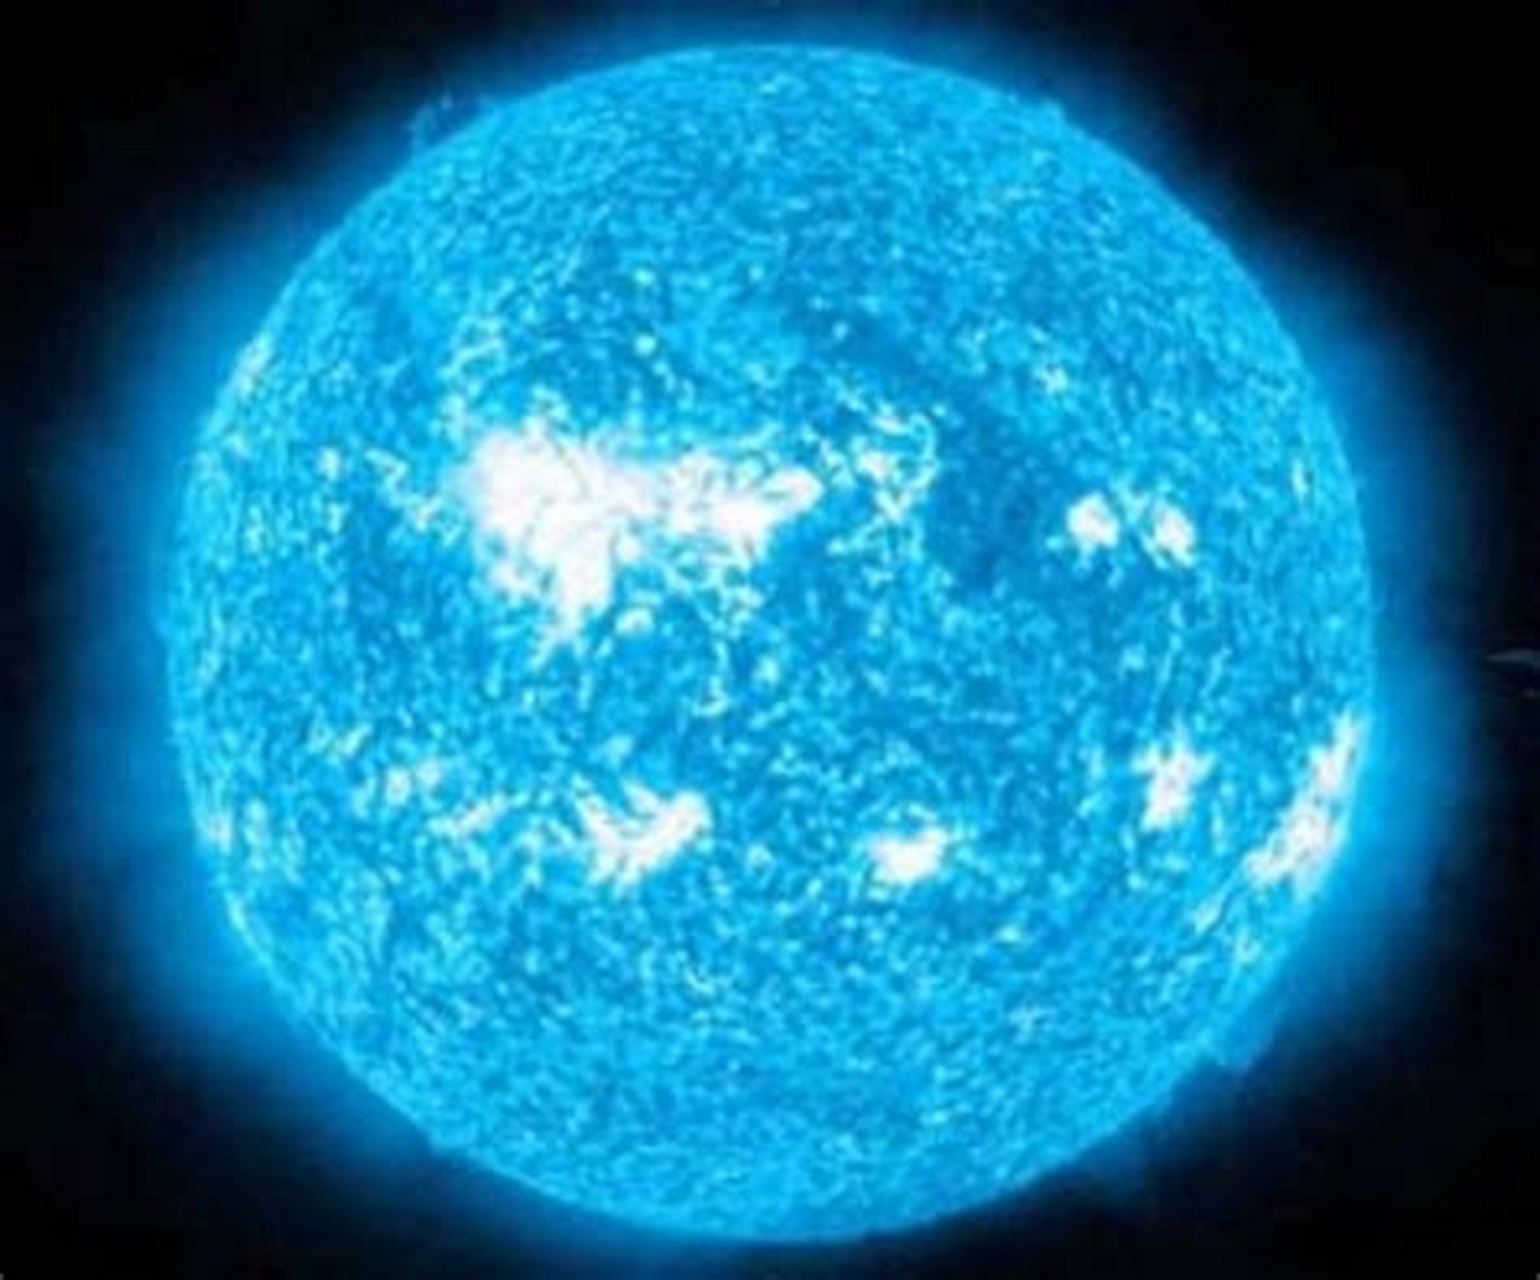 蓝巨星是宇宙中最亮且最炽热的恒星之一